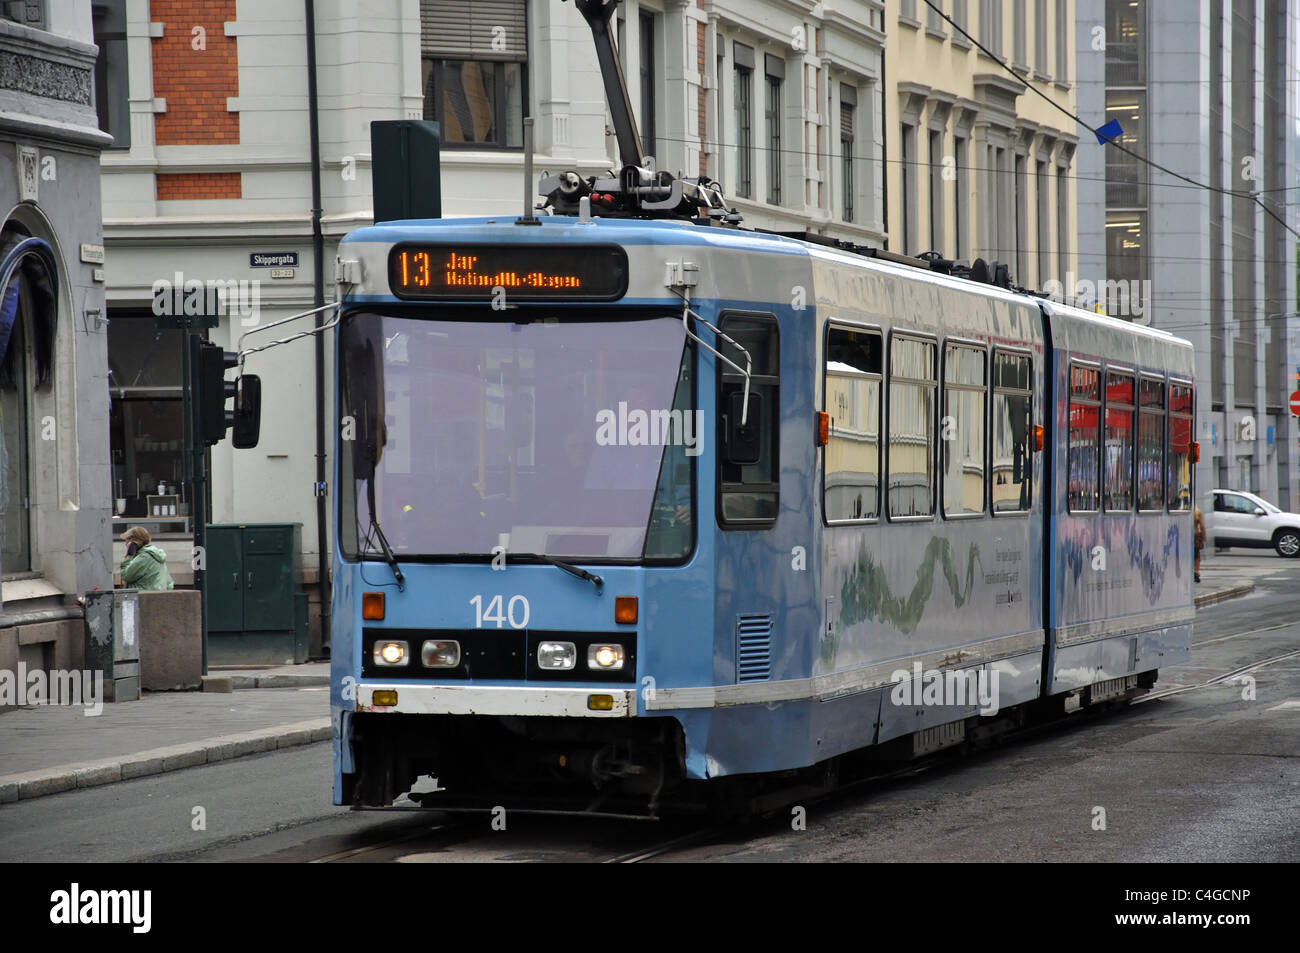 Local tram on street, Oslo, Oslo County, Østlandet Region, Norway Stock Photo